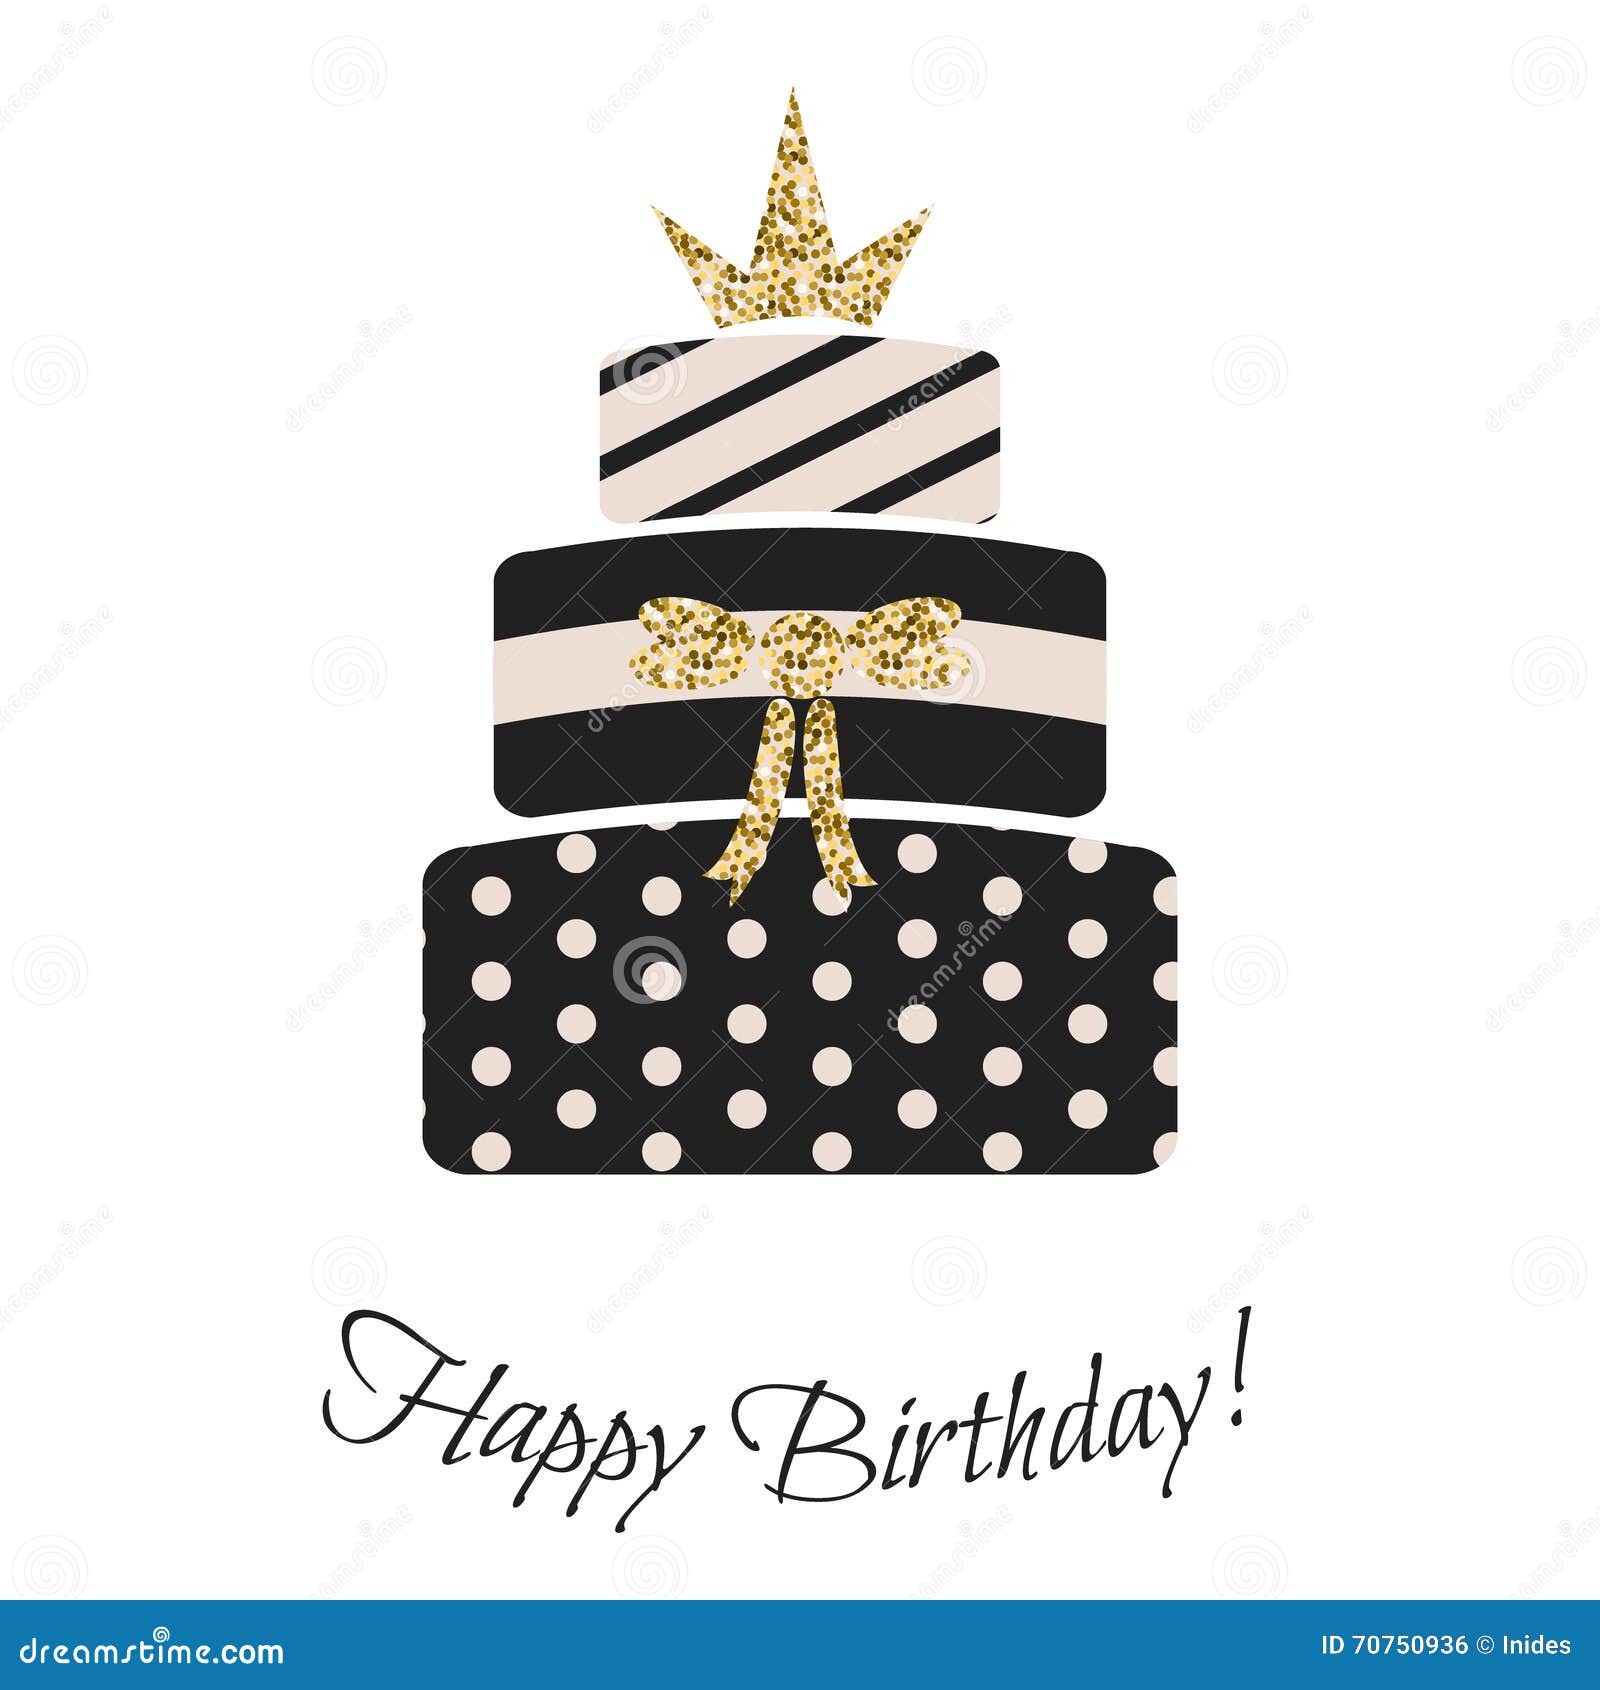 Glam Birthday Cake For Girls Stock Vector Illustration Of Gold